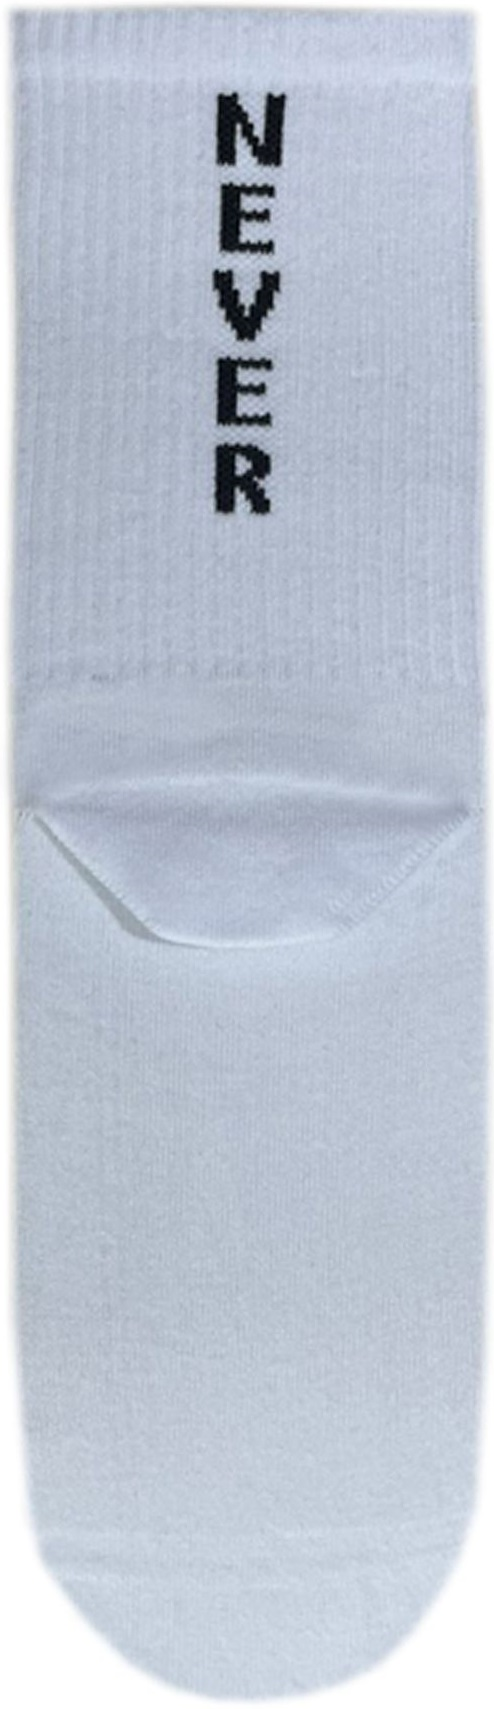 Шкарпетки чоловічі Premier Socks 42-43 1 пара білі з принтом (4820163317922)фото2